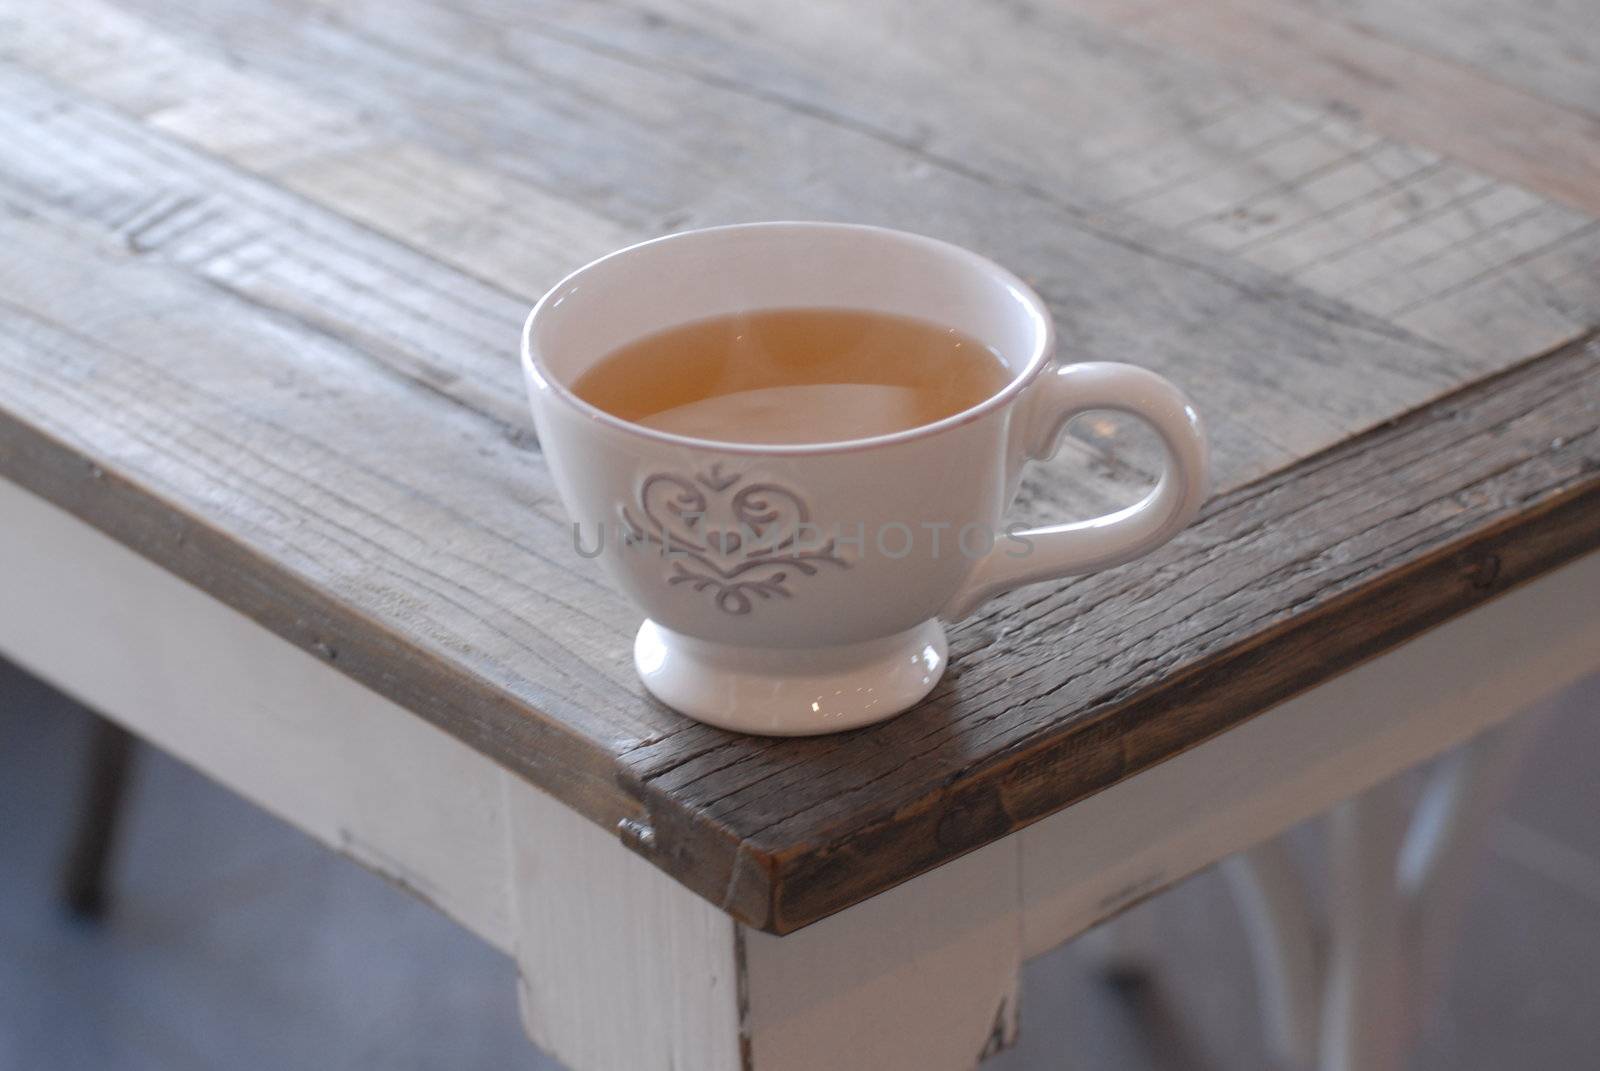 Cup of tea by Bildehagen